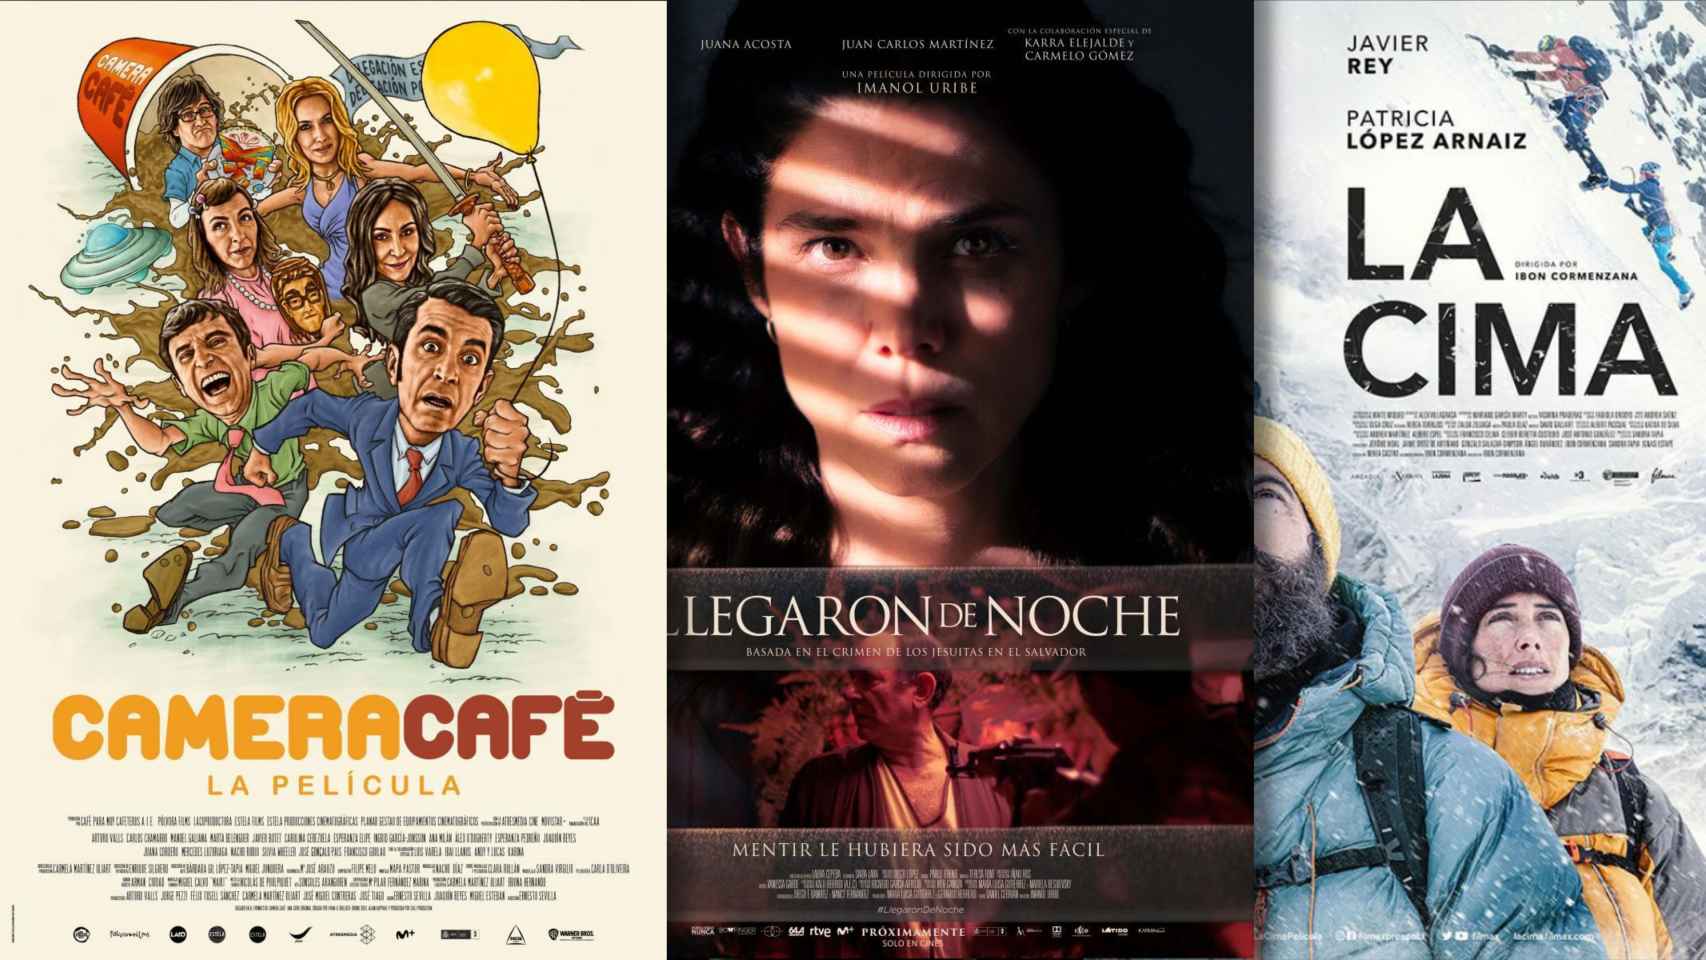 Cartelera de cine: Todas las películas que se estrenan en salas el fin de semana del 25 de marzo de 2022.